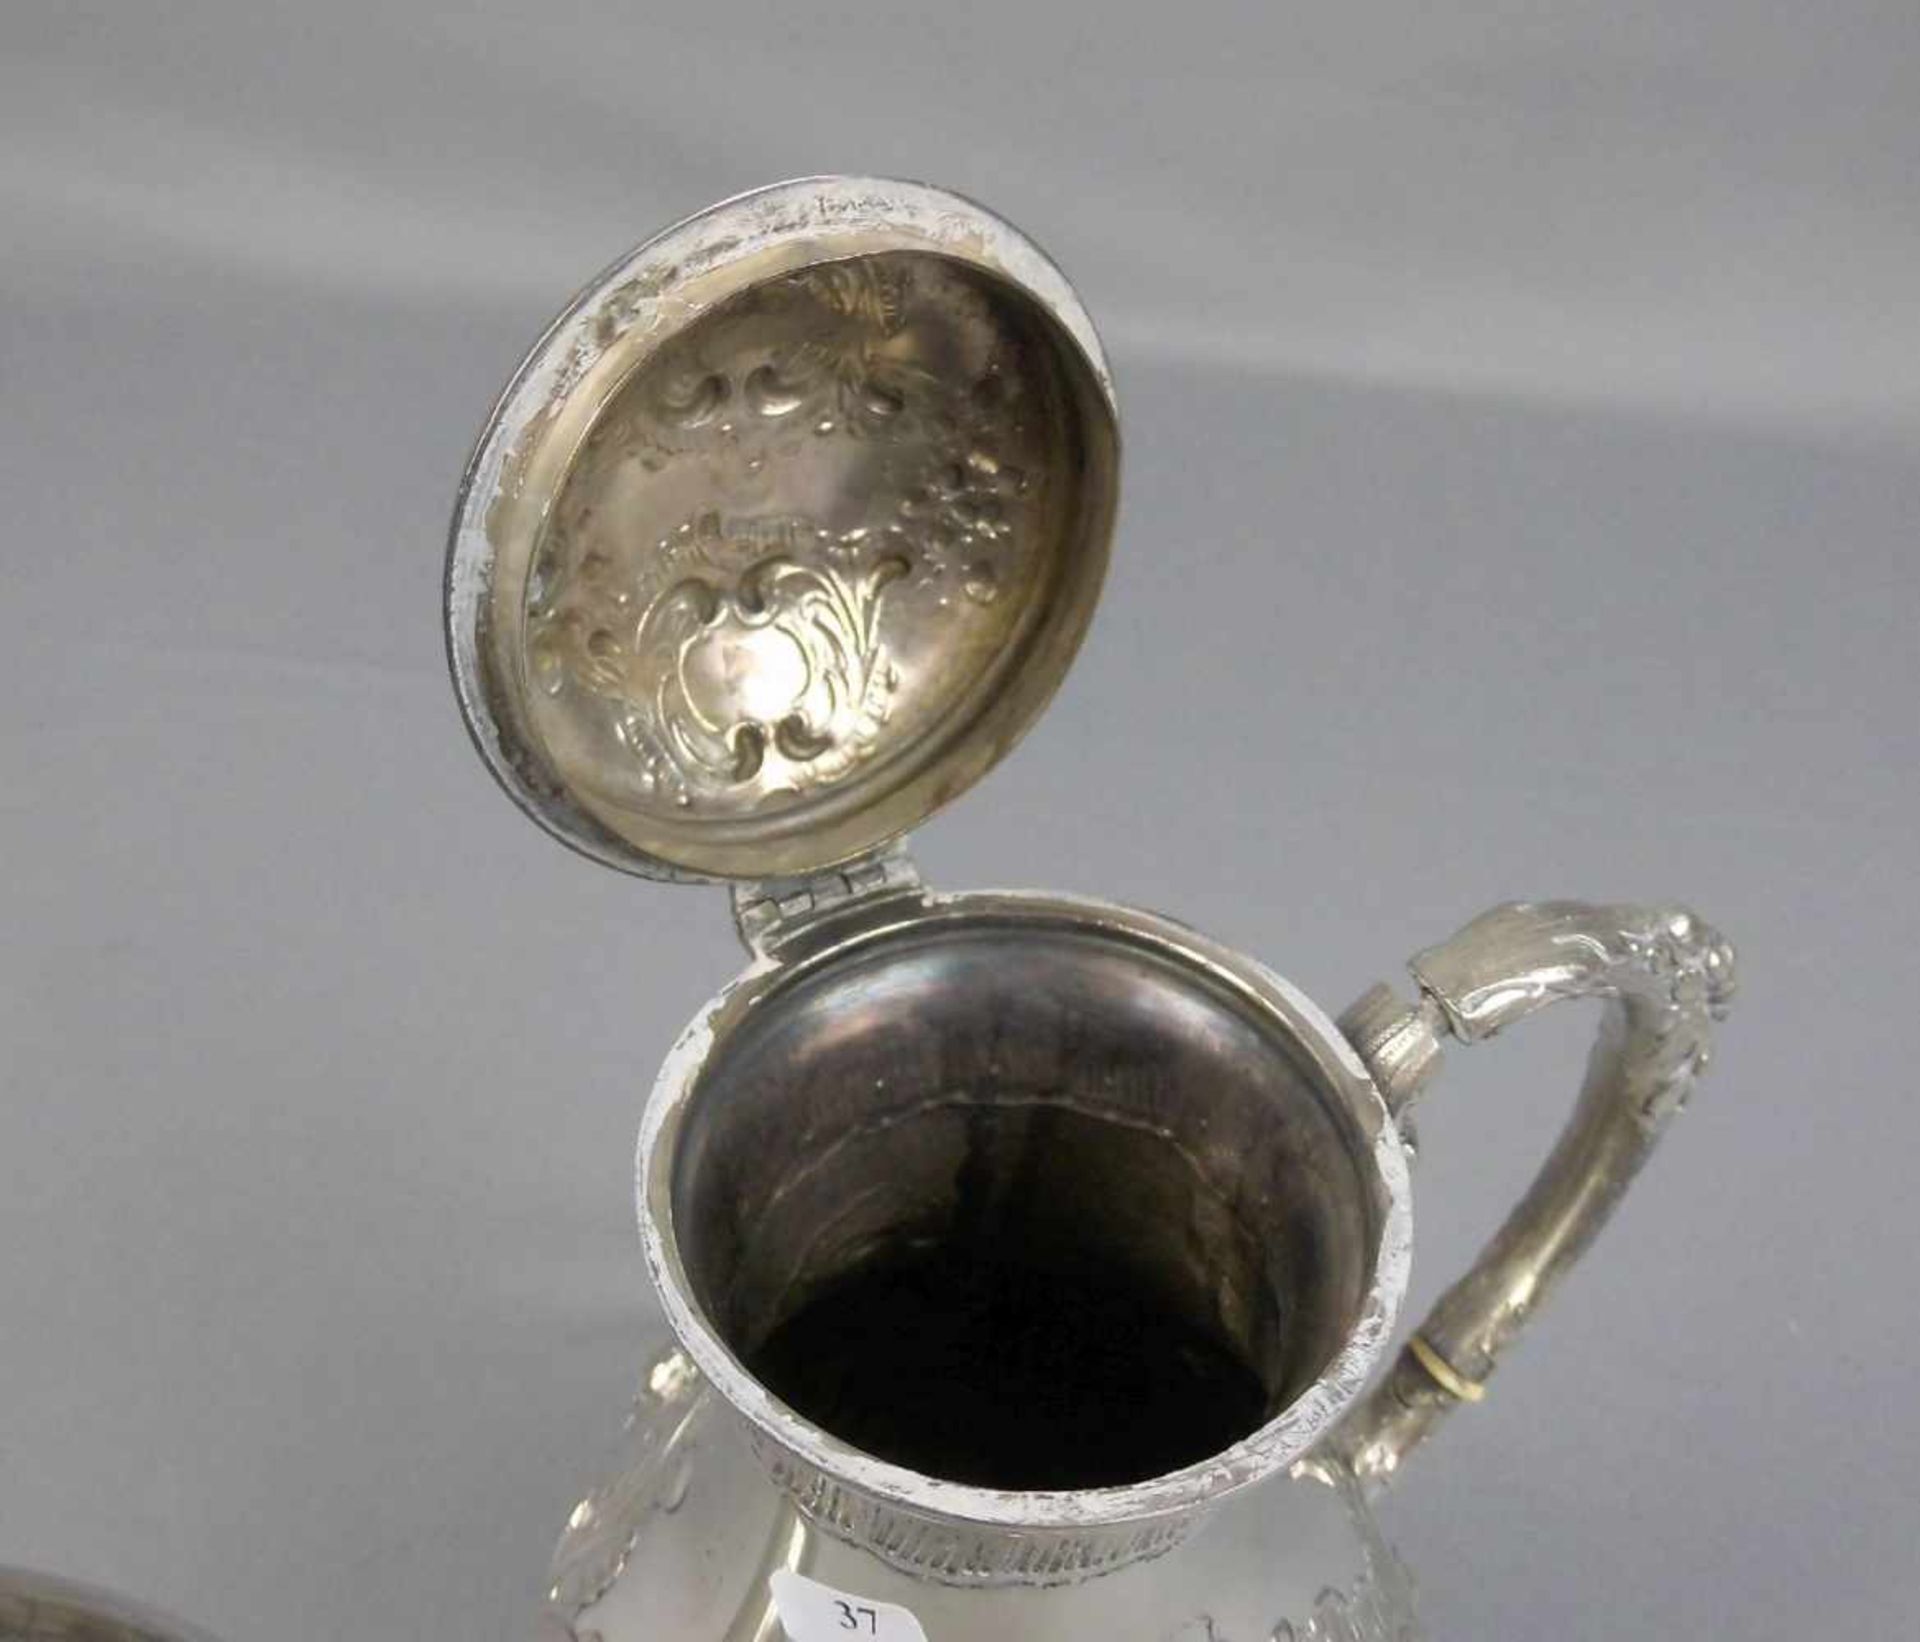 KAFFEEKANNE / silver coffee pot, wohl 19. Jh., 800er Silber (813 g), gepunzt mit Feingehaltsangabe - Image 5 of 7